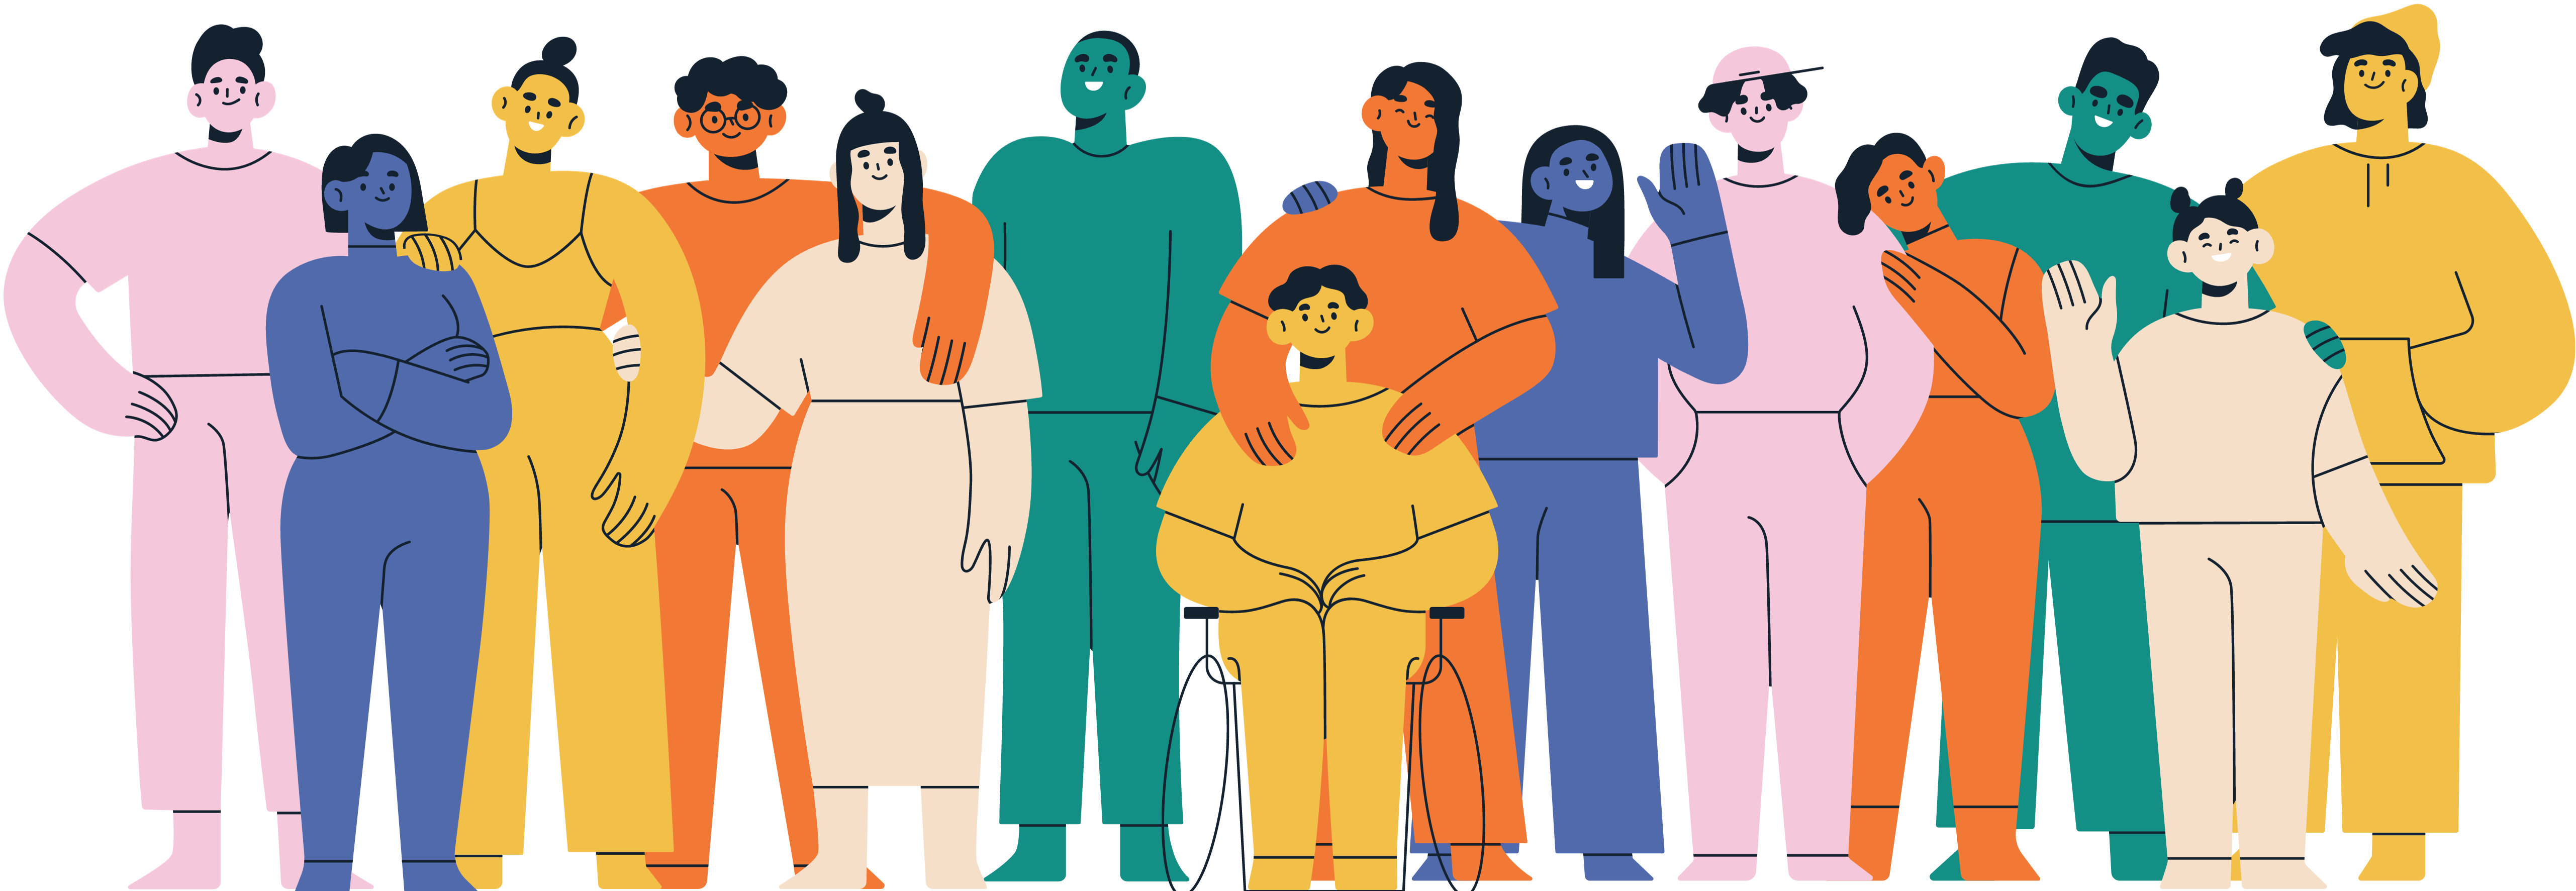 Ilustración de un grupo diverso de personas.